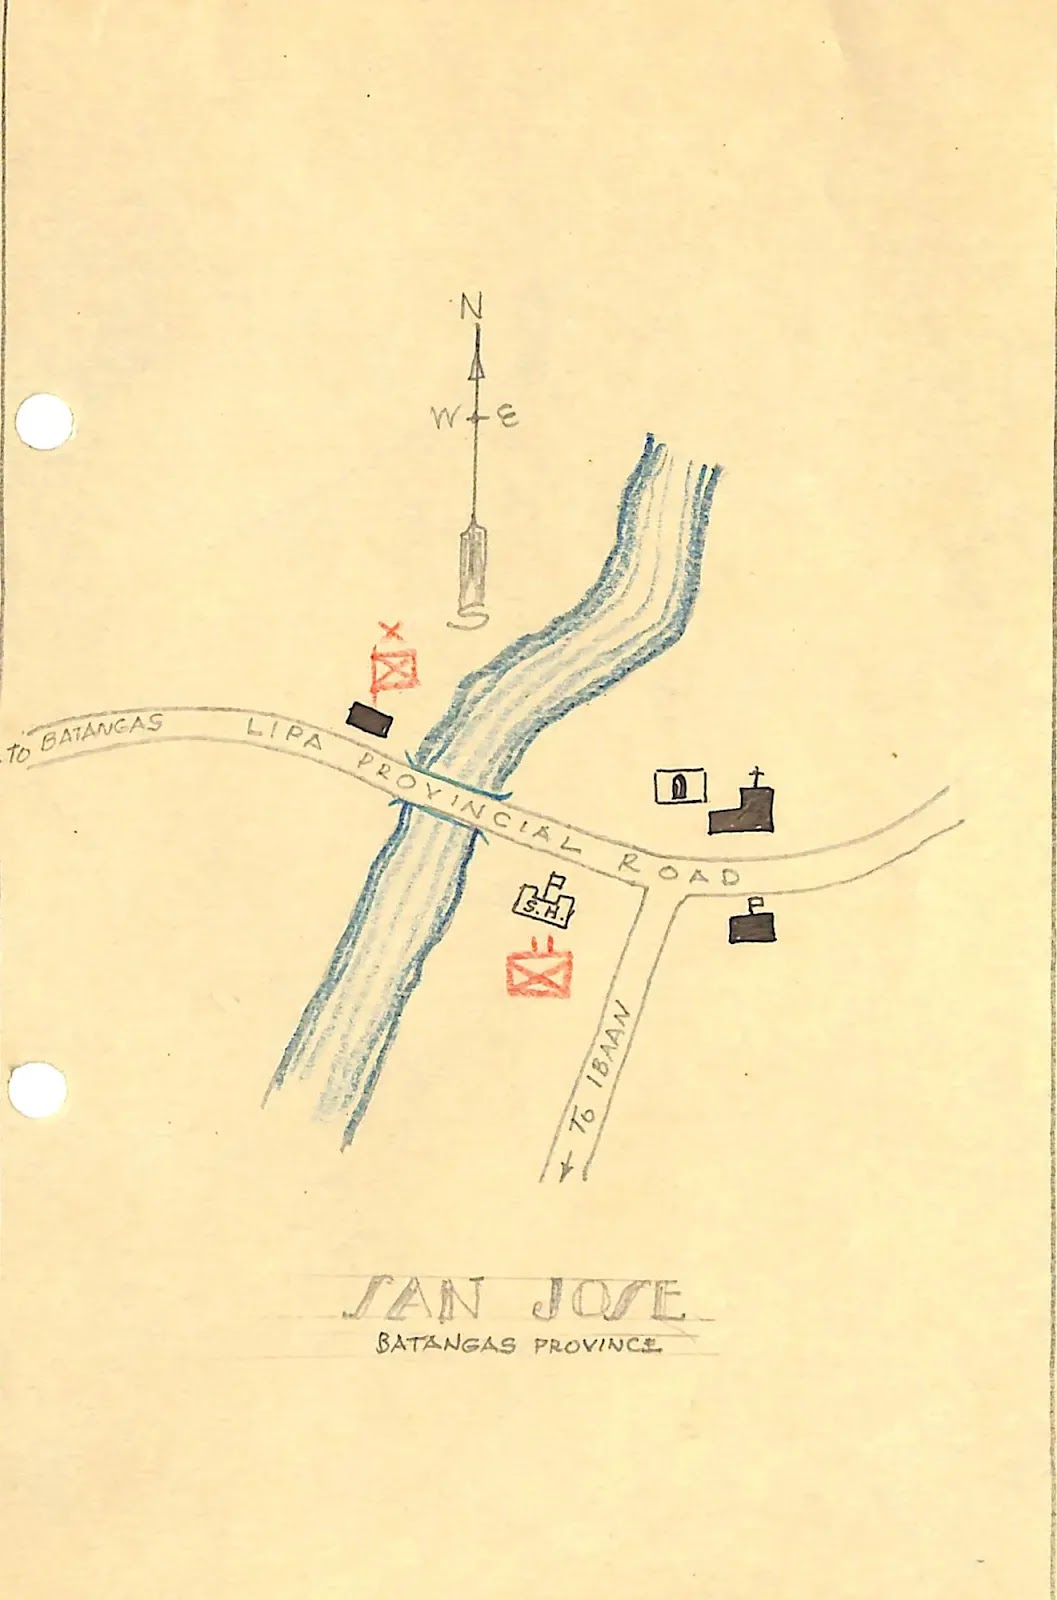 PQOG sketch map of San Jose.